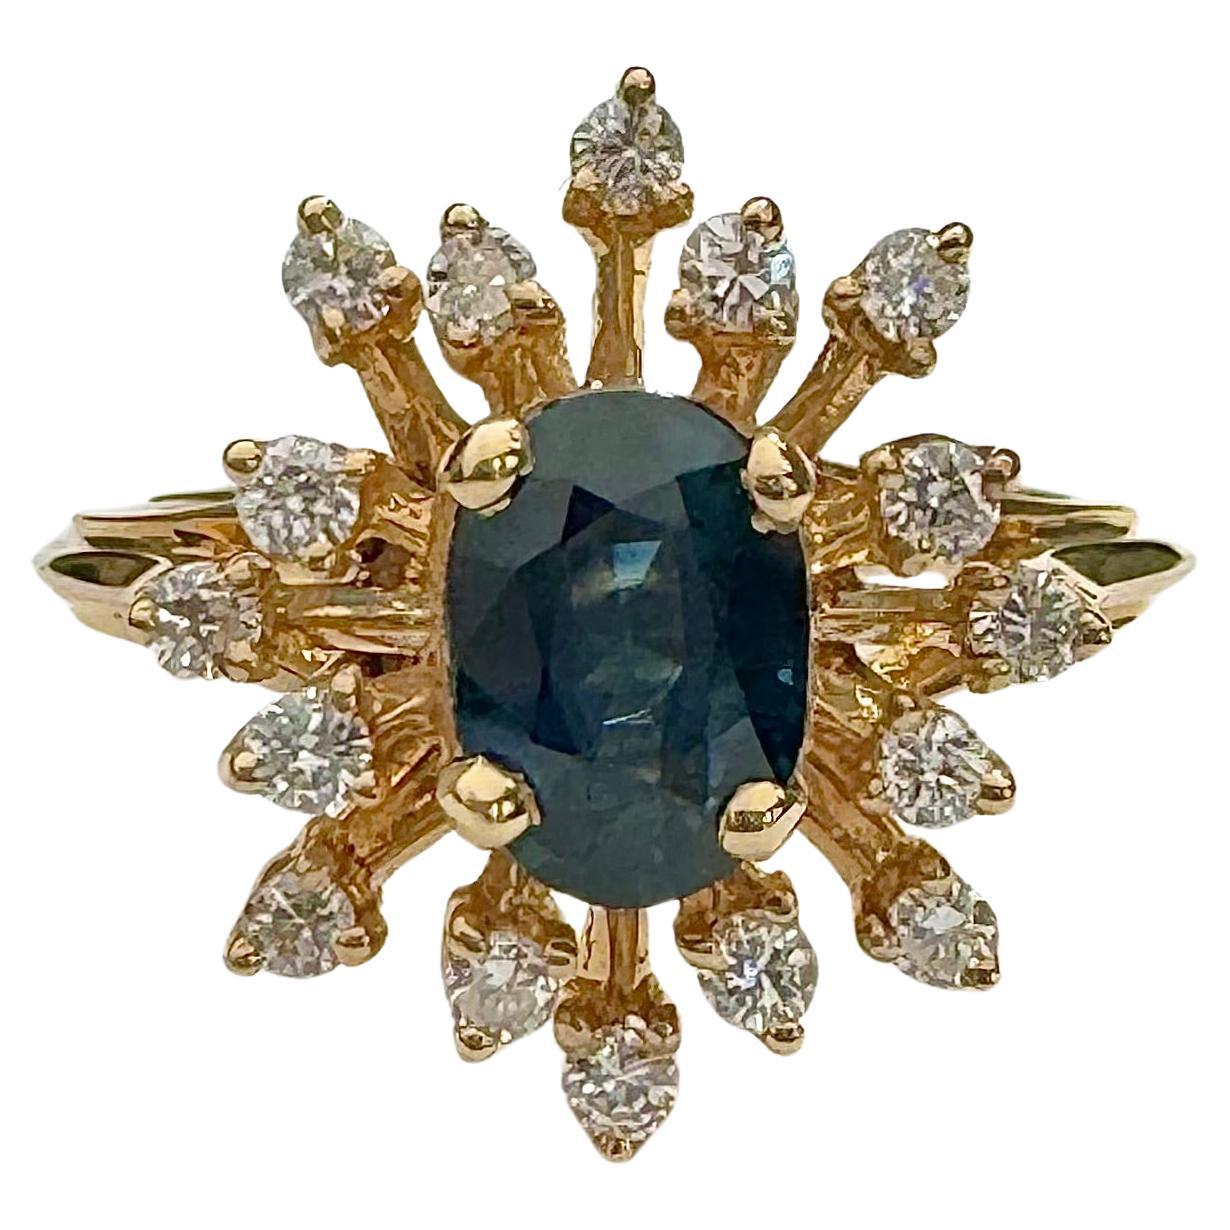 Saphir und Diamant Ring in 14k Gelbgold